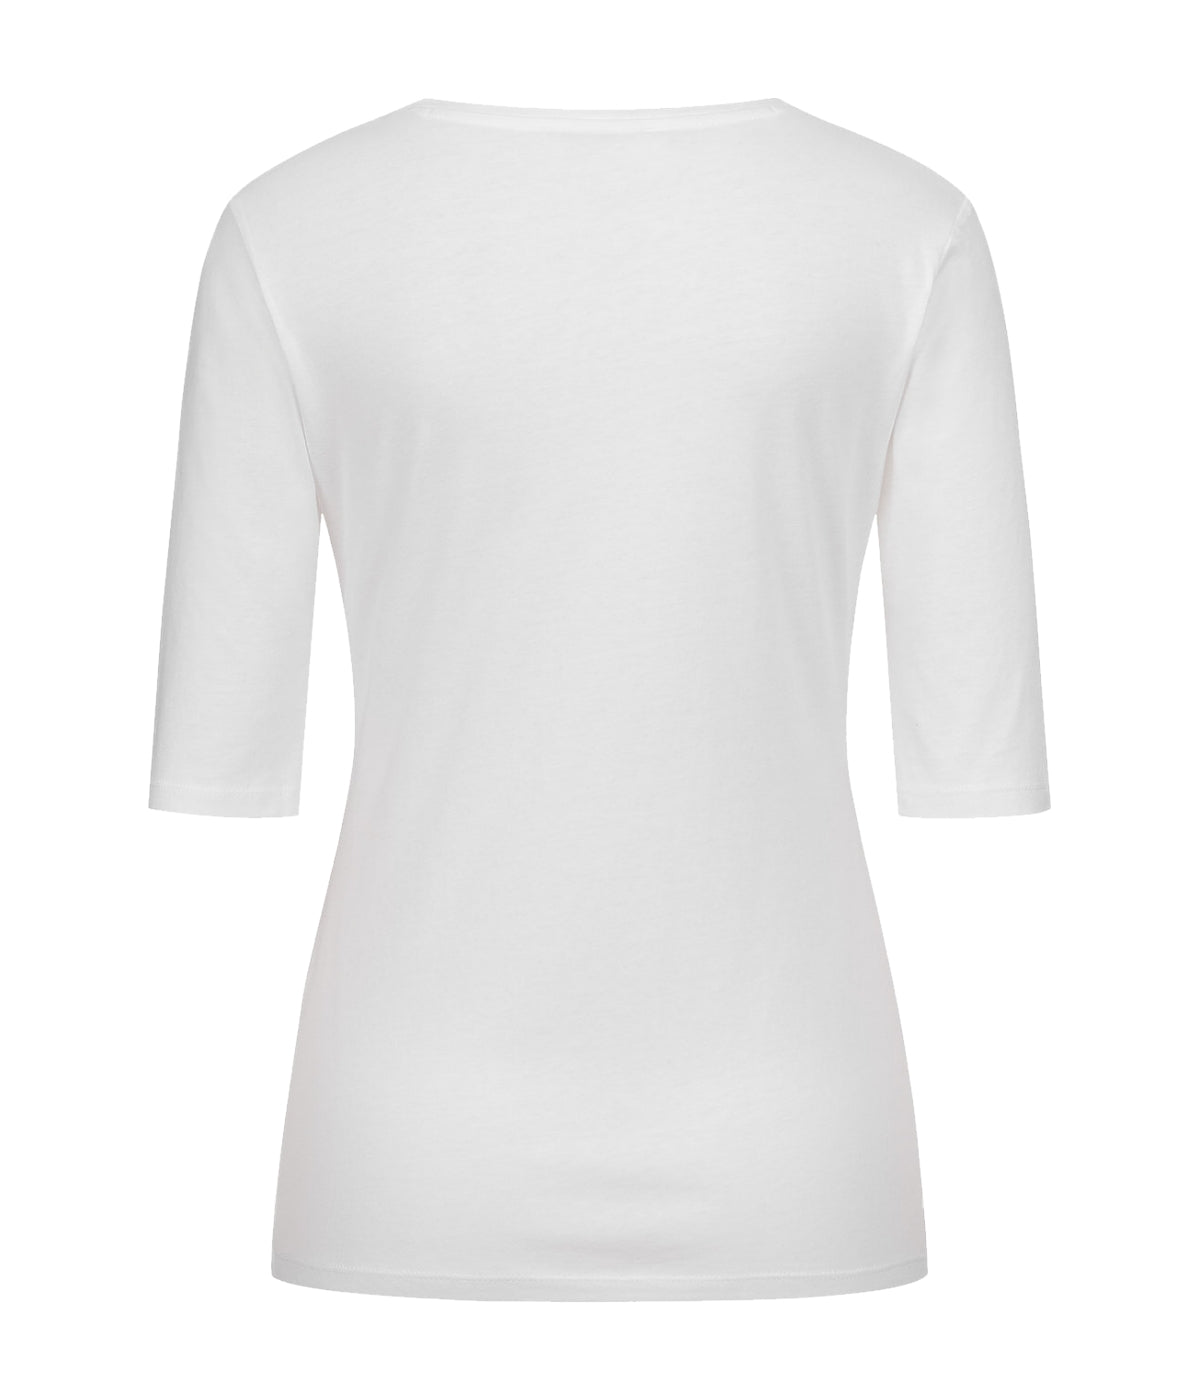 Gitta Banko the label T-Shirt Adele in weiß. Slim fit Shirt in feiner Baumwolle Modal Qualität von Gitta Banko online kaufen. Schmal geschnittenes Basic Shirt mit Rundhals Ausschnitt aus der neuen Gitta Banko Kollektion.